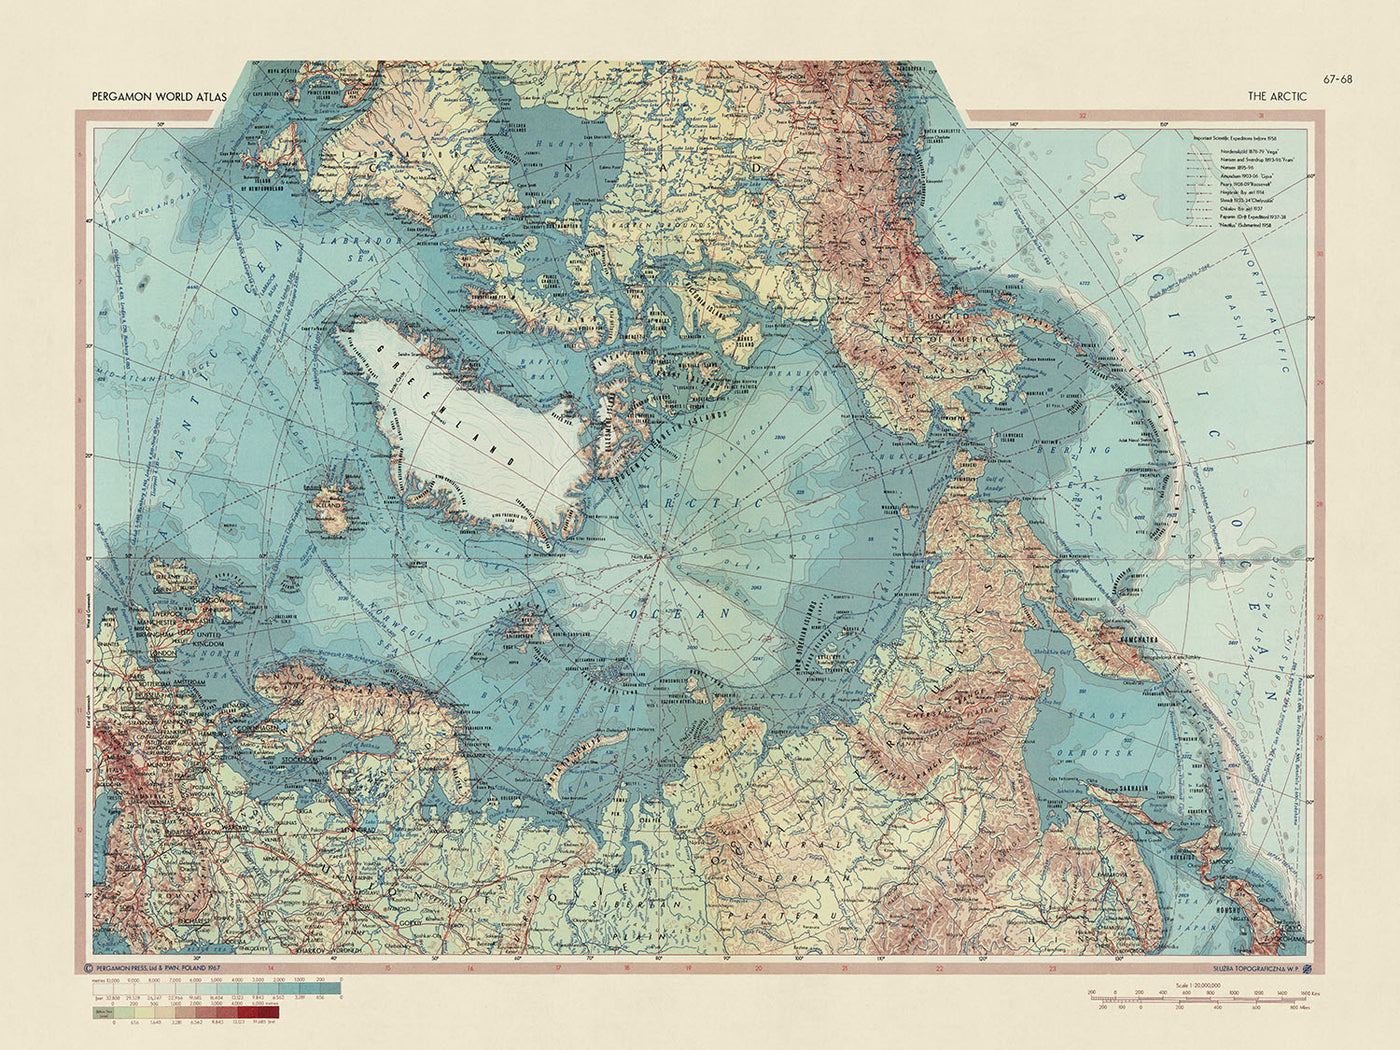 Mapa antiguo del Ártico realizado por el Servicio de Topografía del Ejército Polaco, 1967: descripción política y física detallada, rutas de expediciones científicas anteriores a 1957, énfasis en la región ártica mediante proyección cartográfica